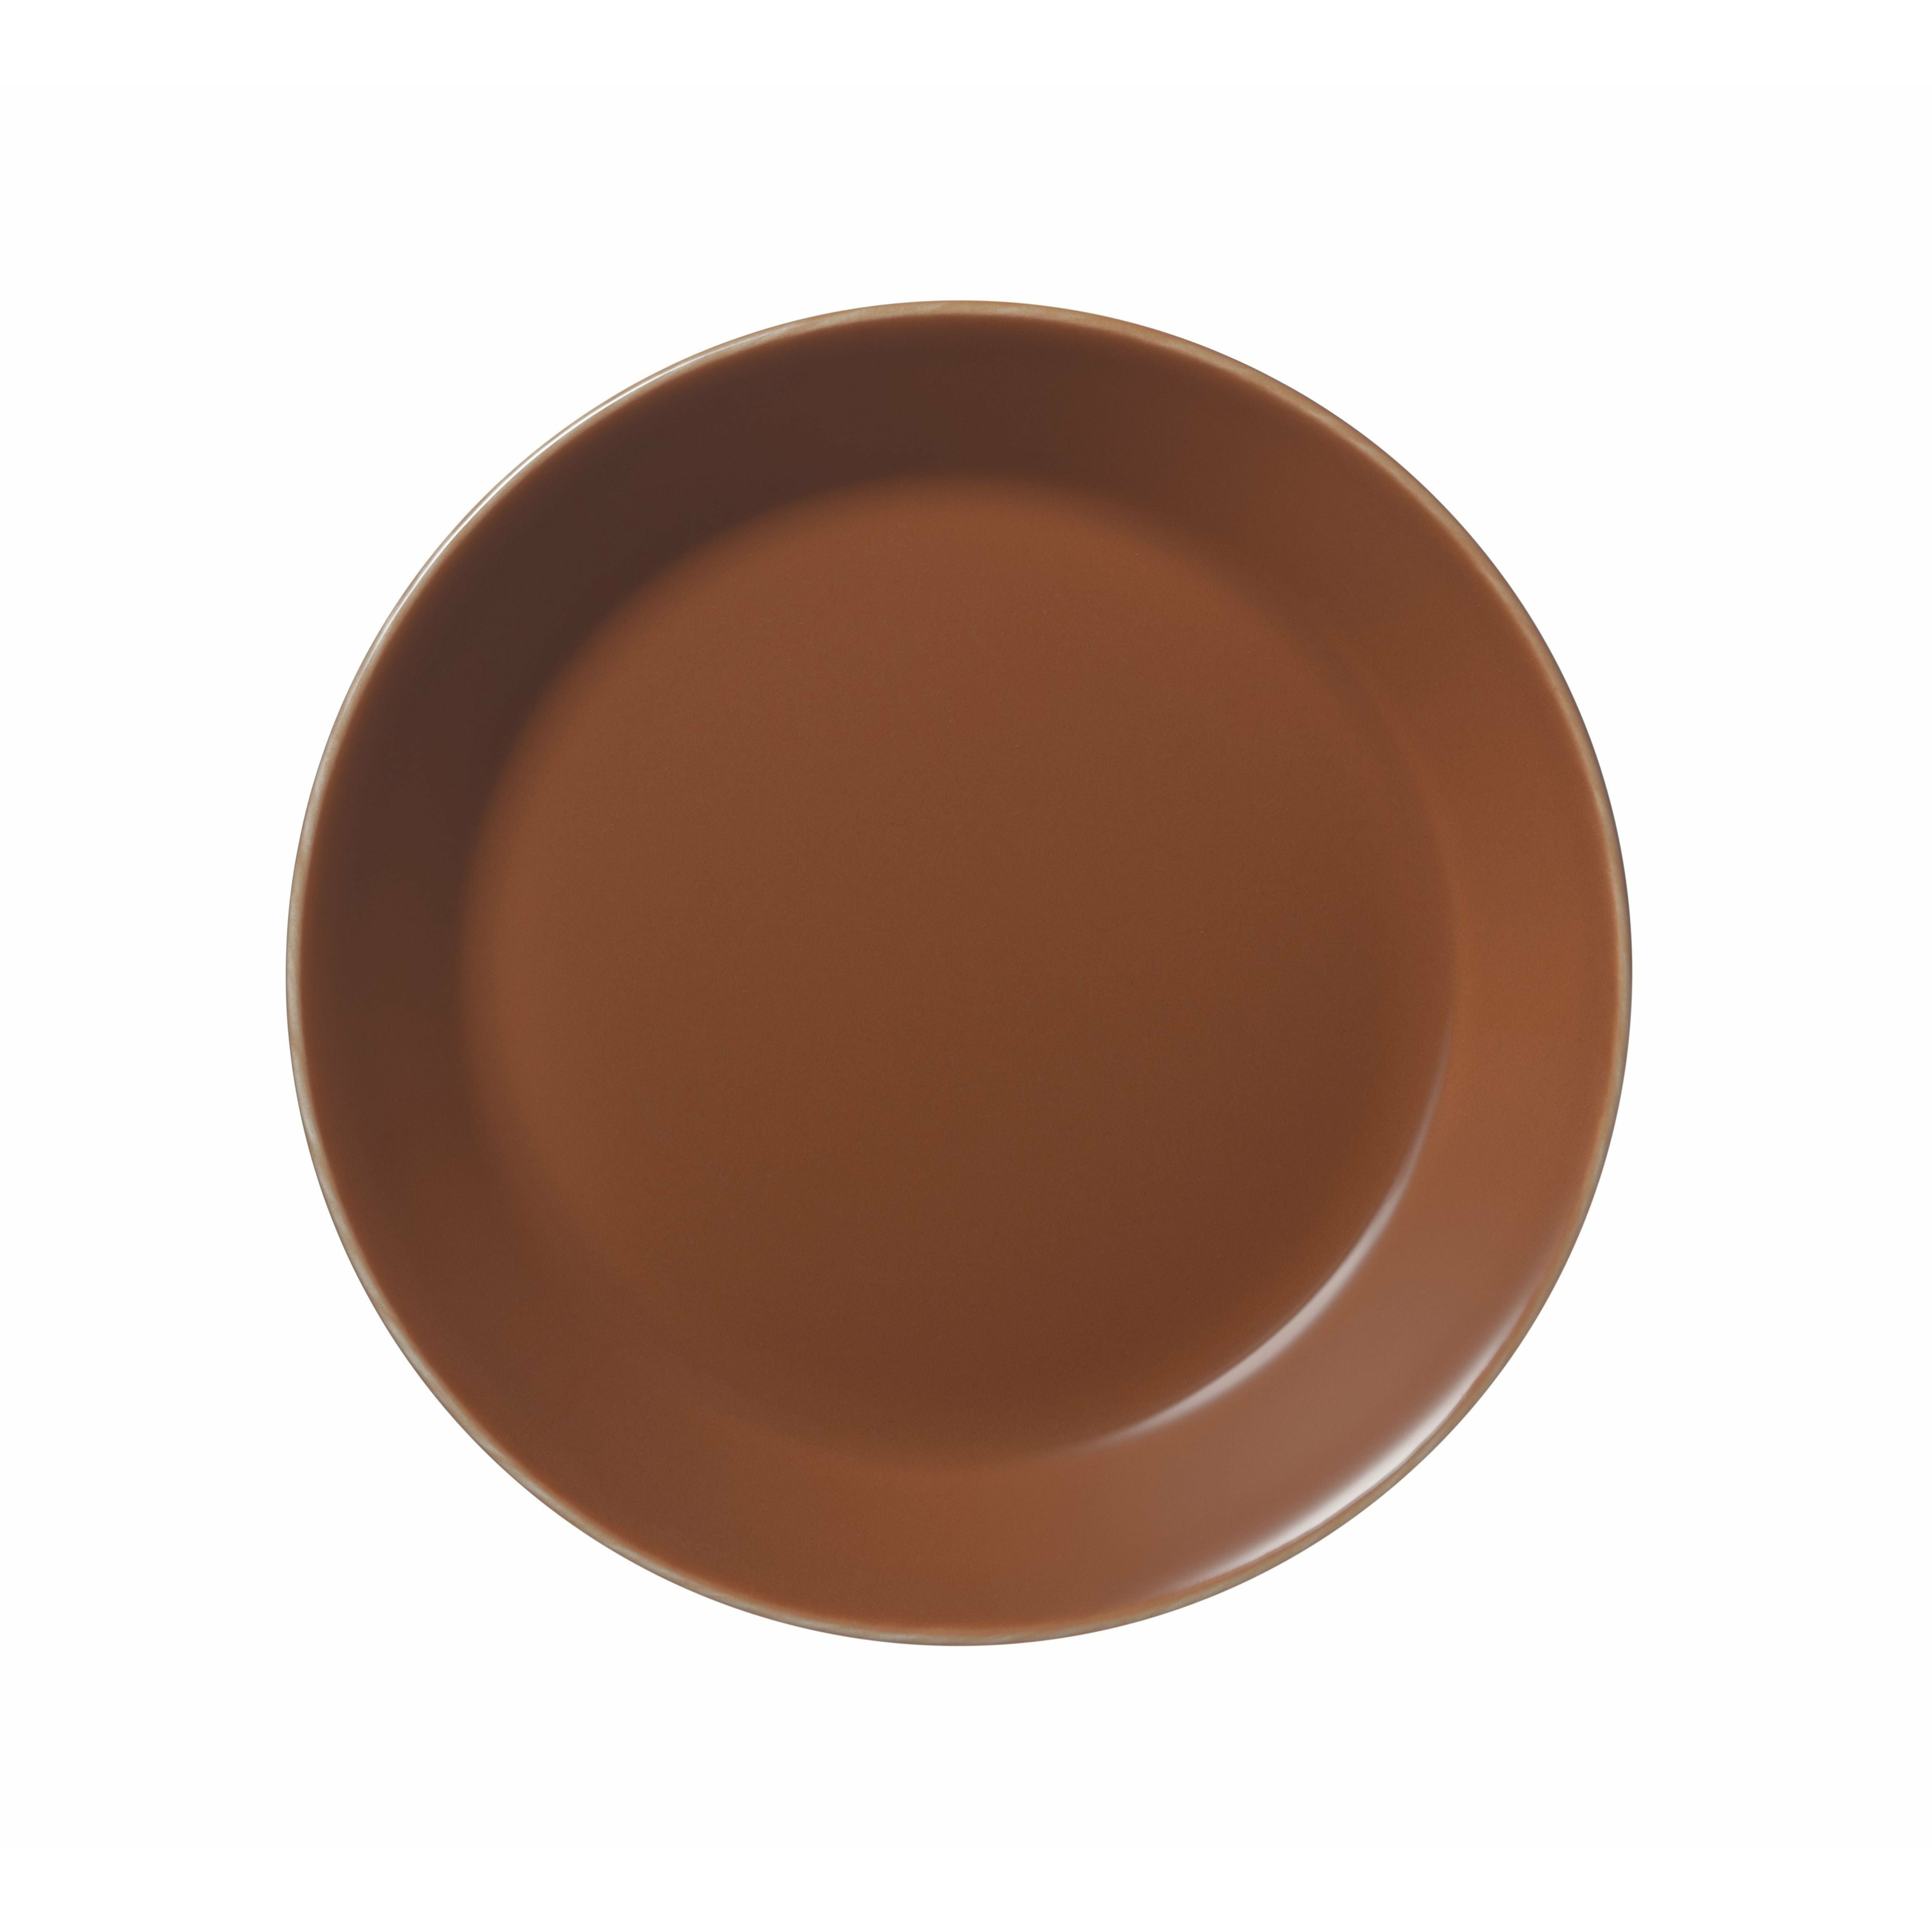 Iittala teema plate 17cm, vintage brun